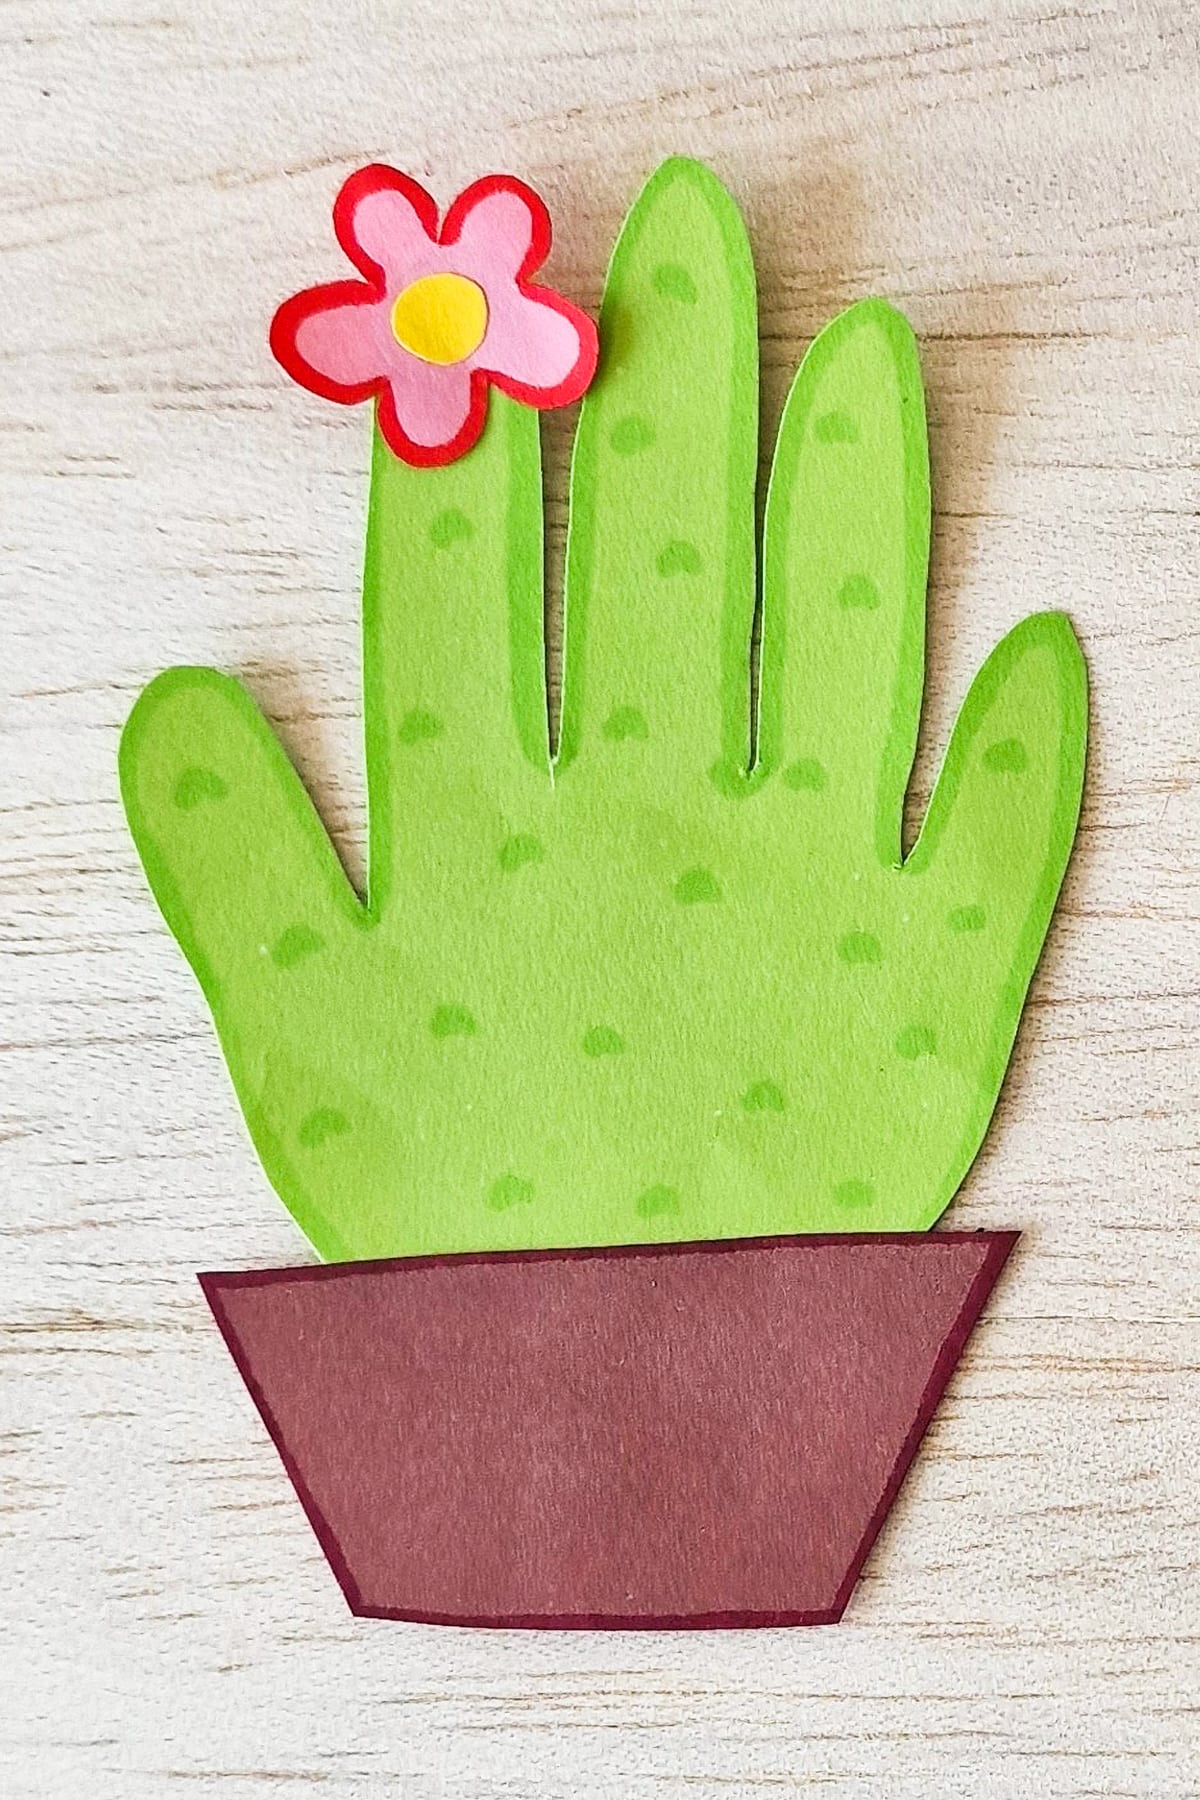 Handprint cactus craft.